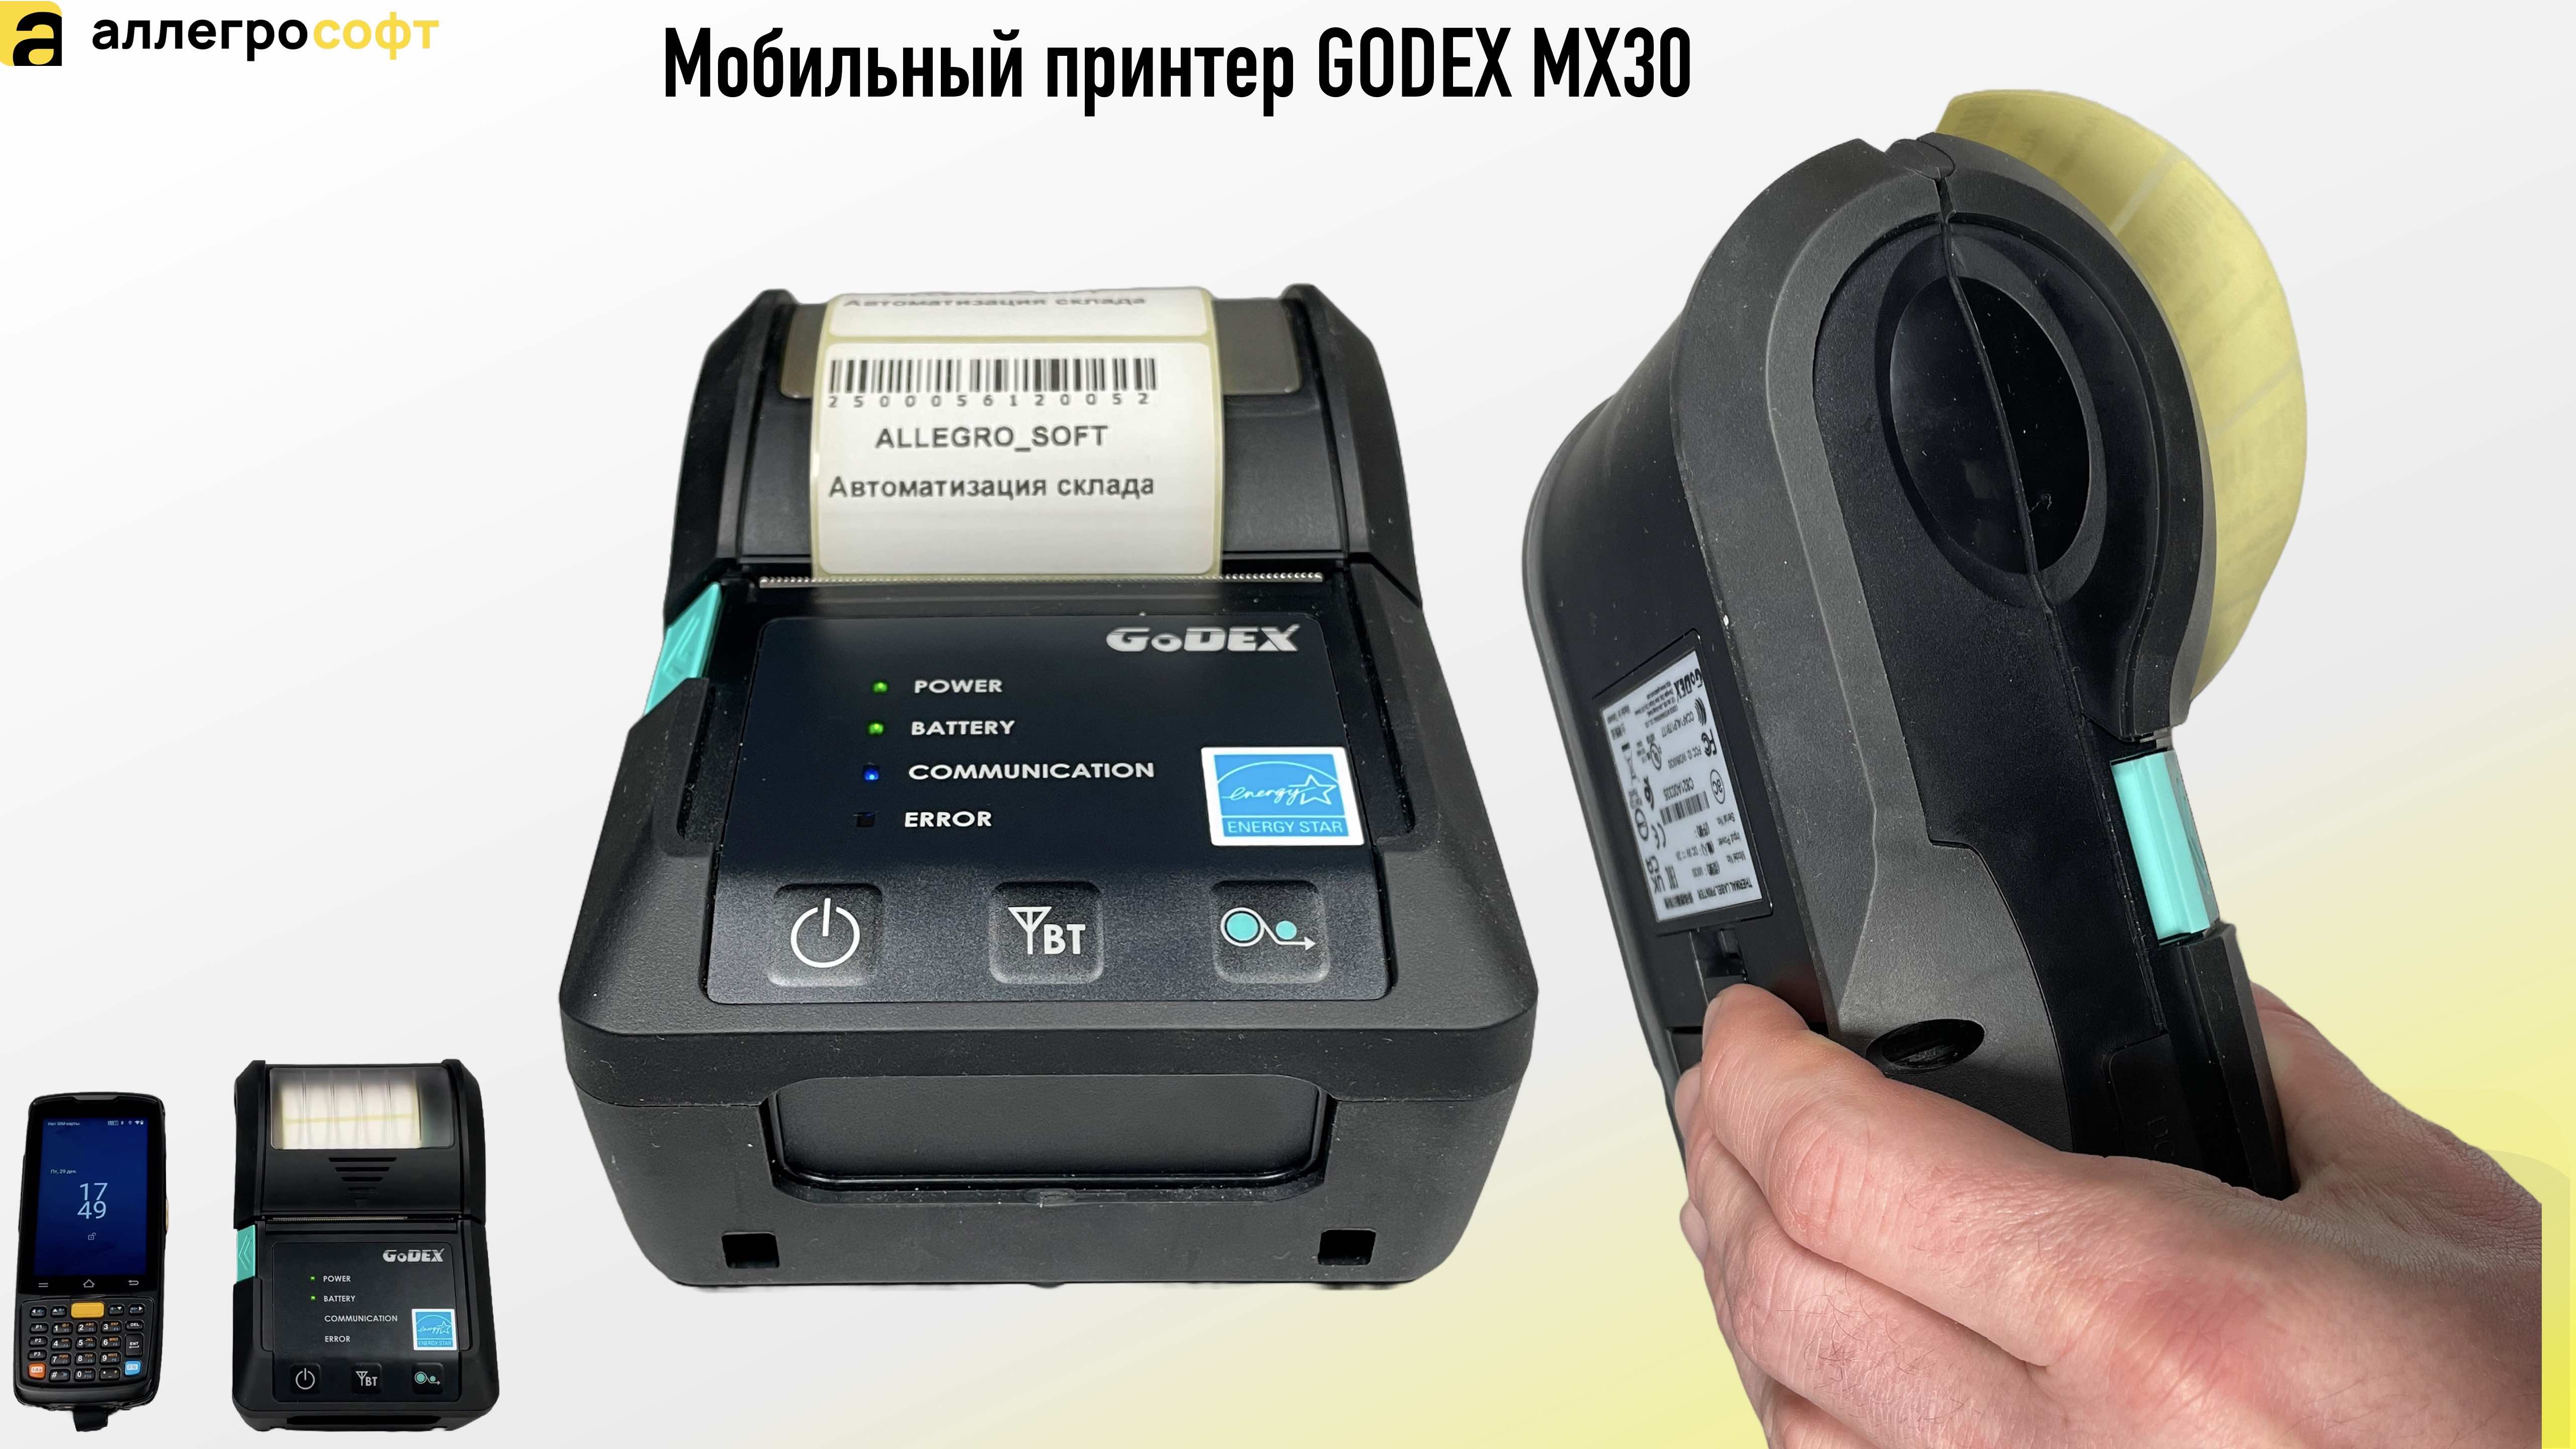 Обзор мобильного принтера GODEX MX30